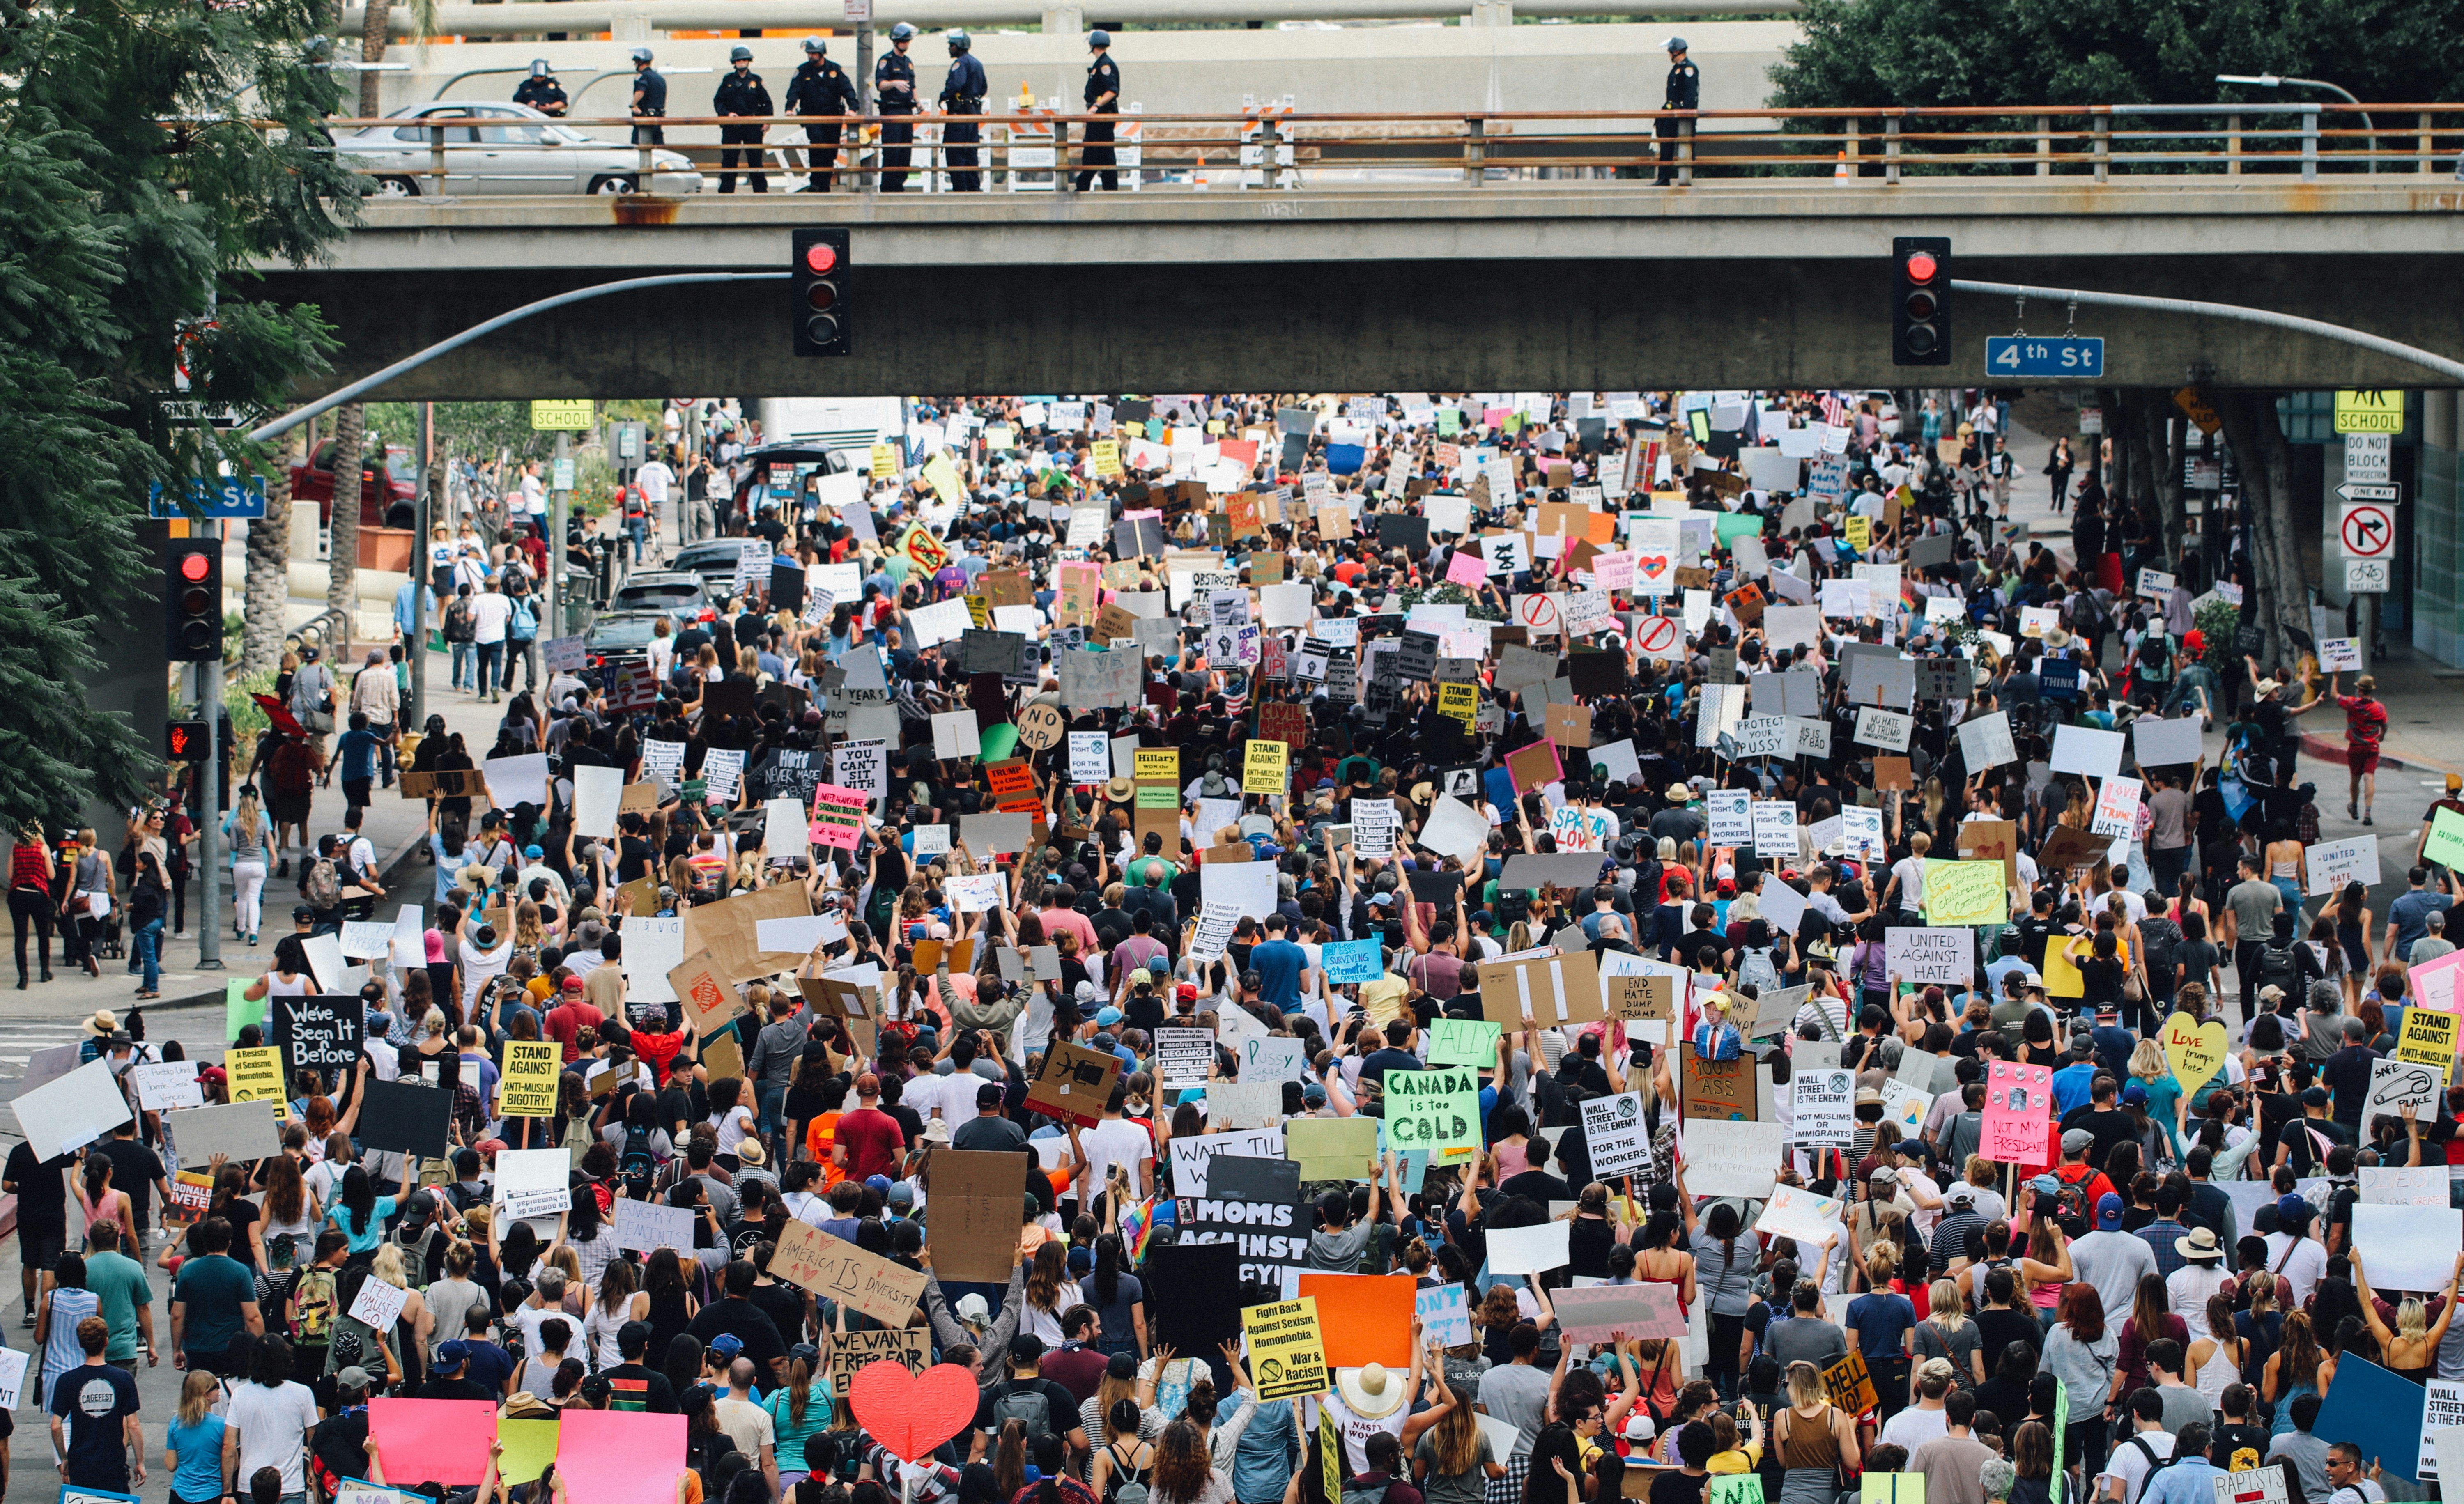 Los Angeles Protestors